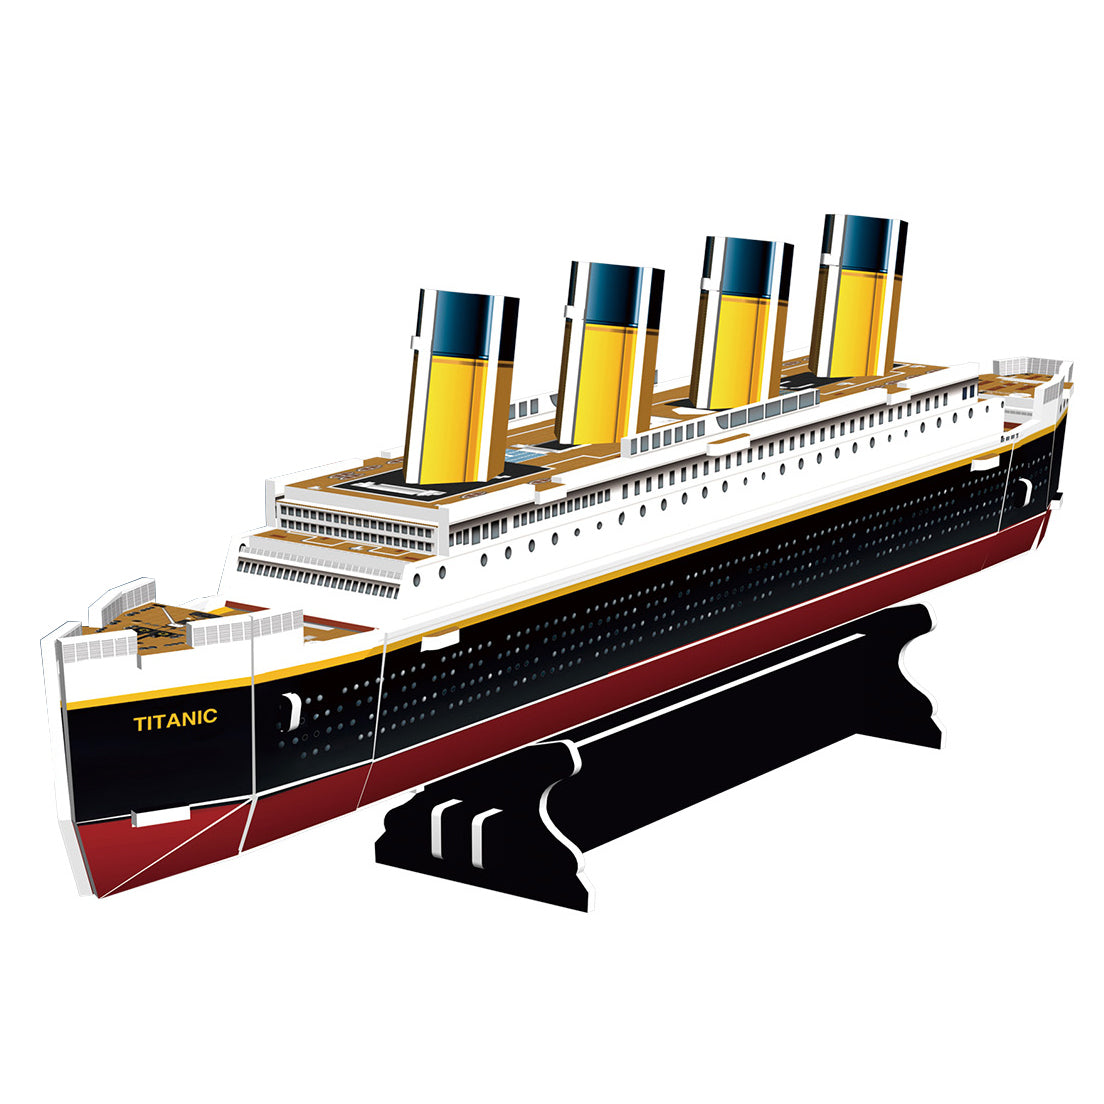 Revell - Mini 3D Puzzle RMS Titanic